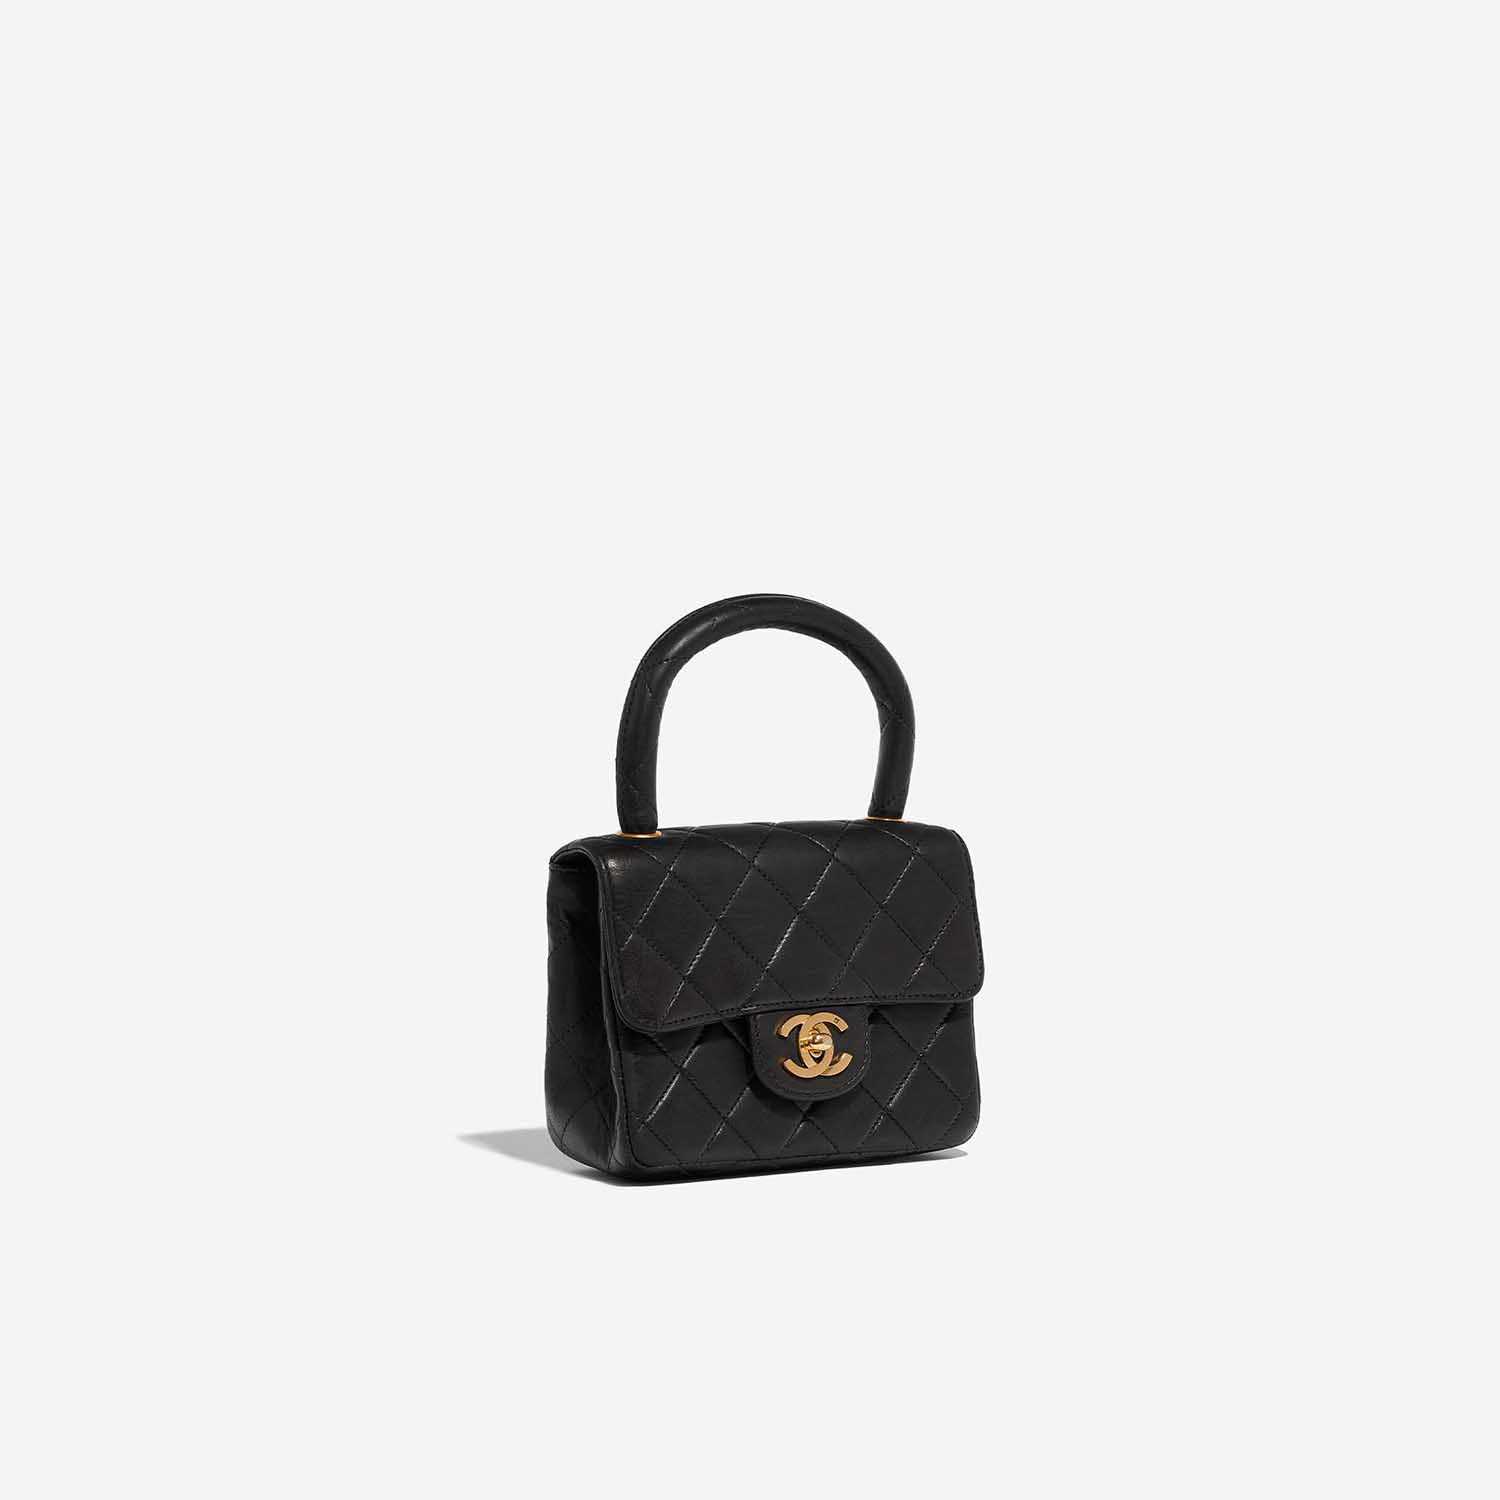 Sac Chanel d'occasion Timeless Poignée Petit Agneau Noir Noir Côté Face | Vendez votre sac de créateur sur Saclab.com